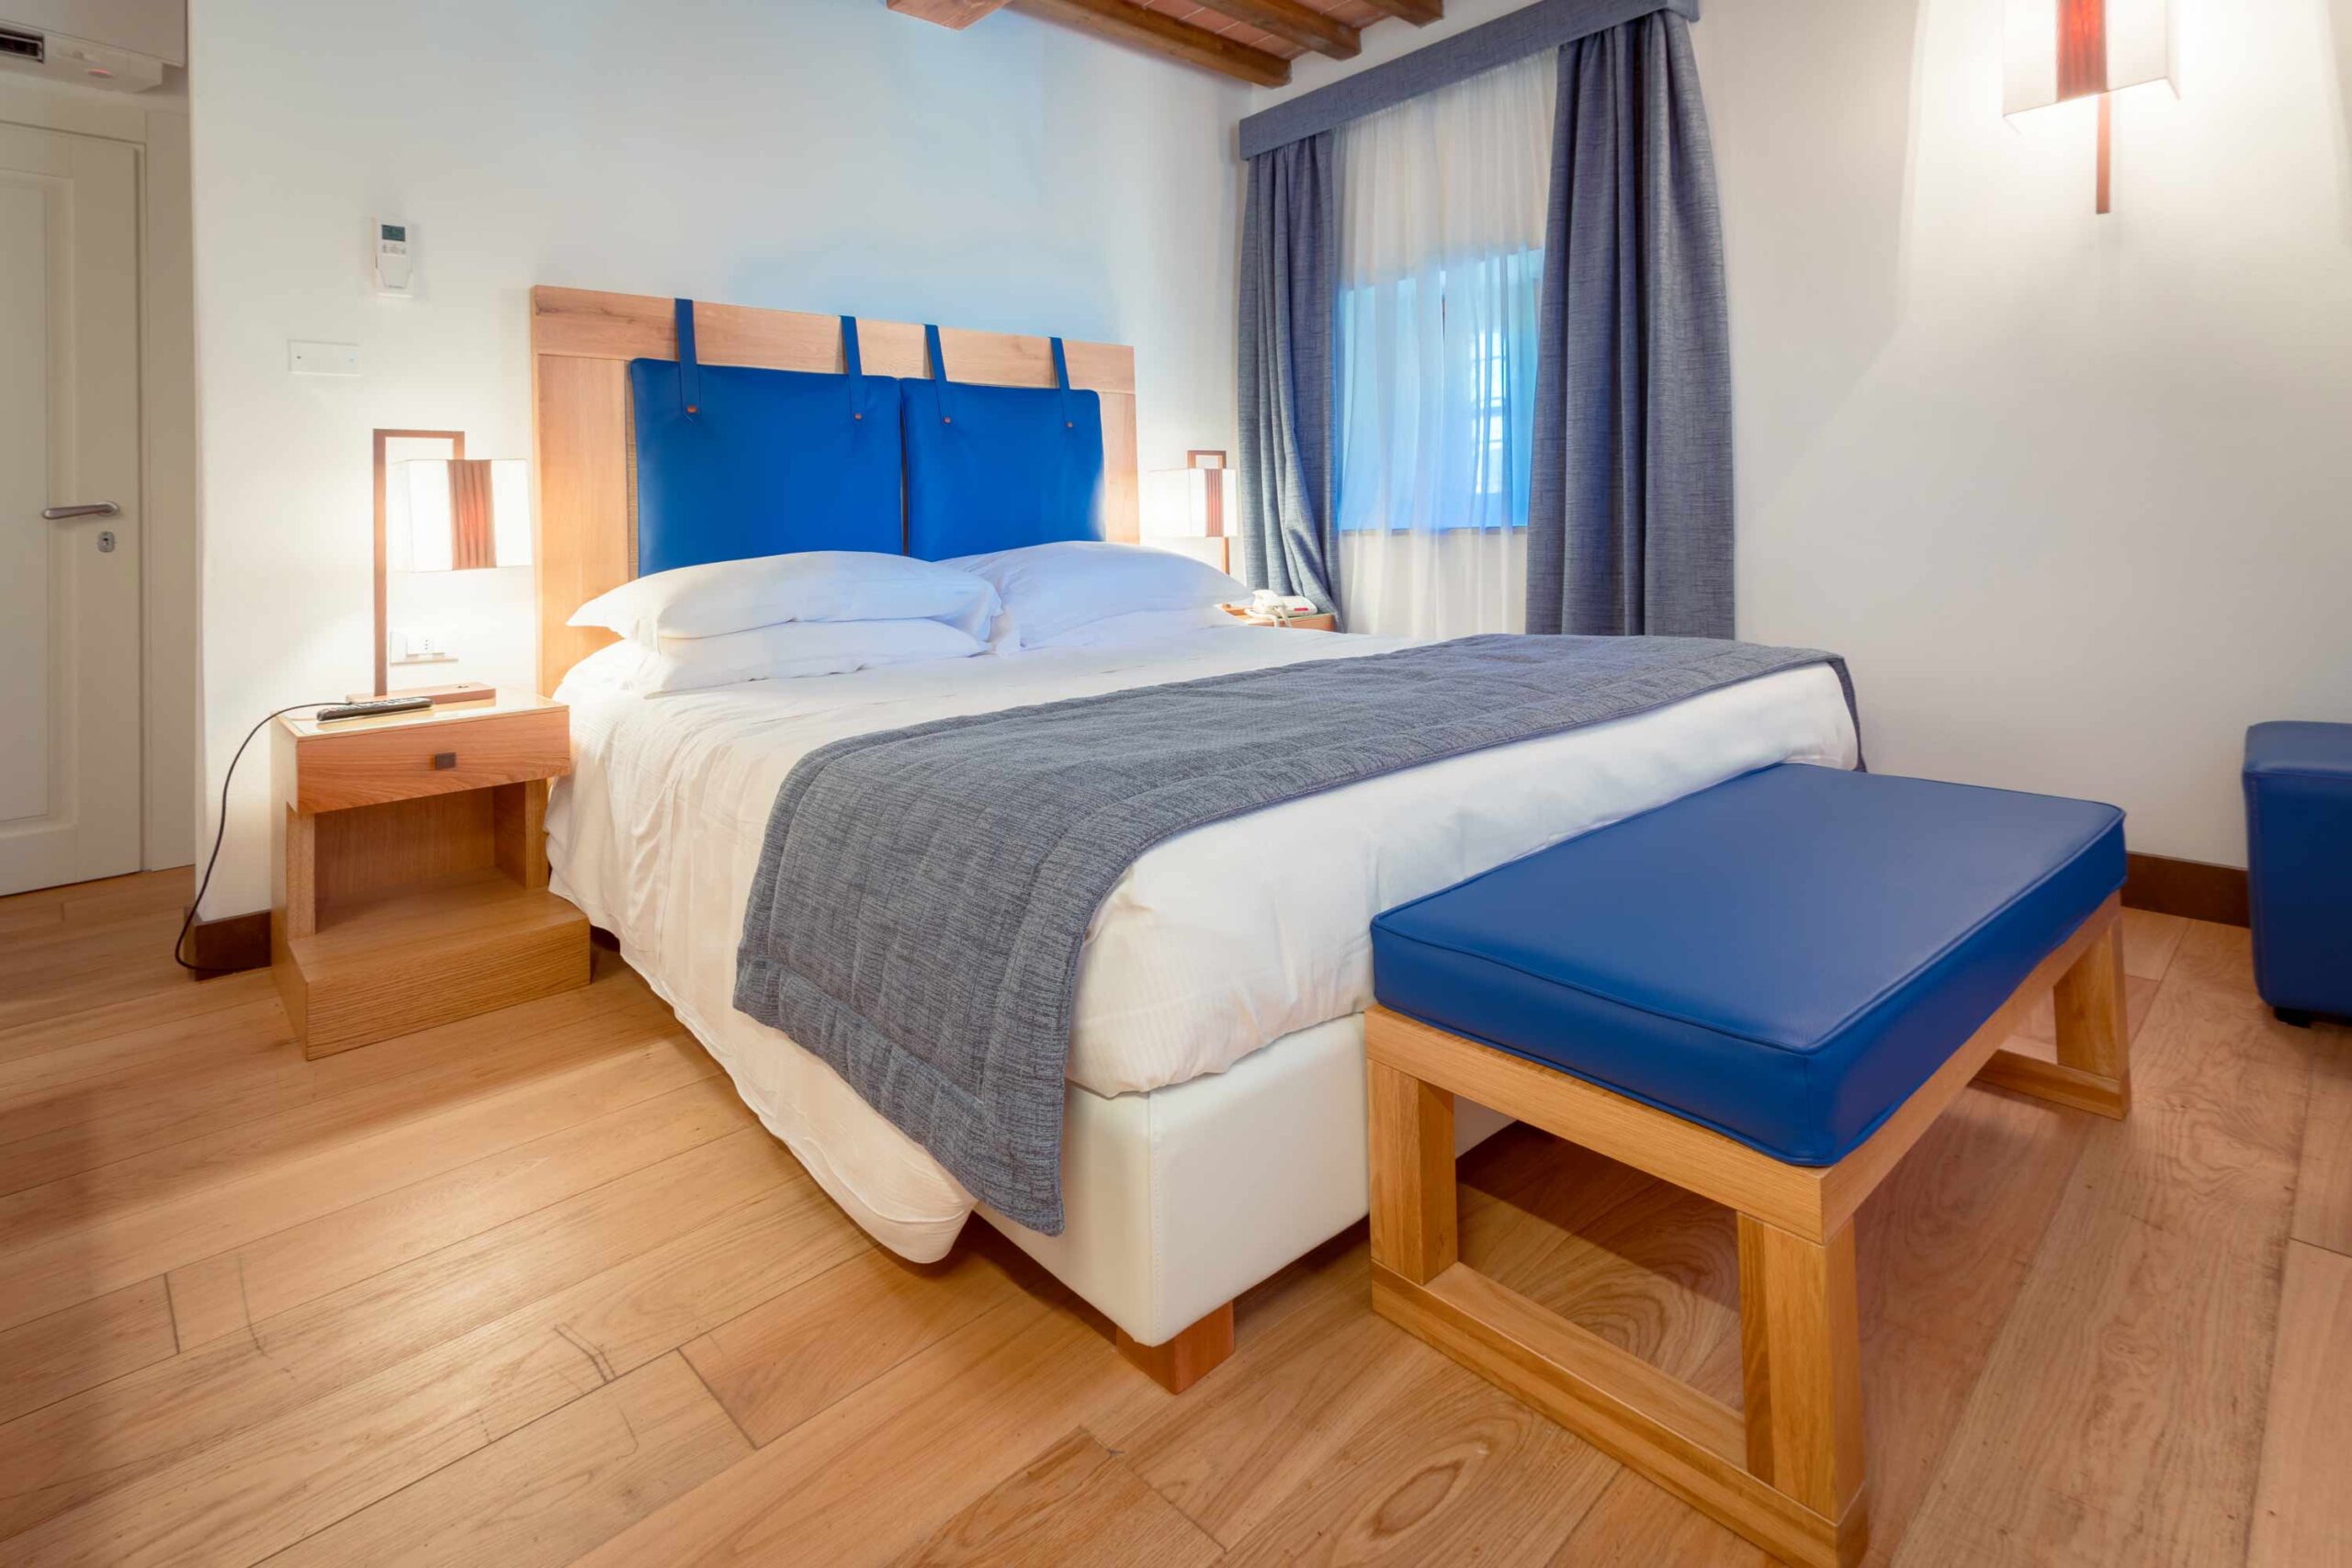 Appartamento Begonia letto matrimoniale - Villa Tolomei Hotel & Resort 5 stelle